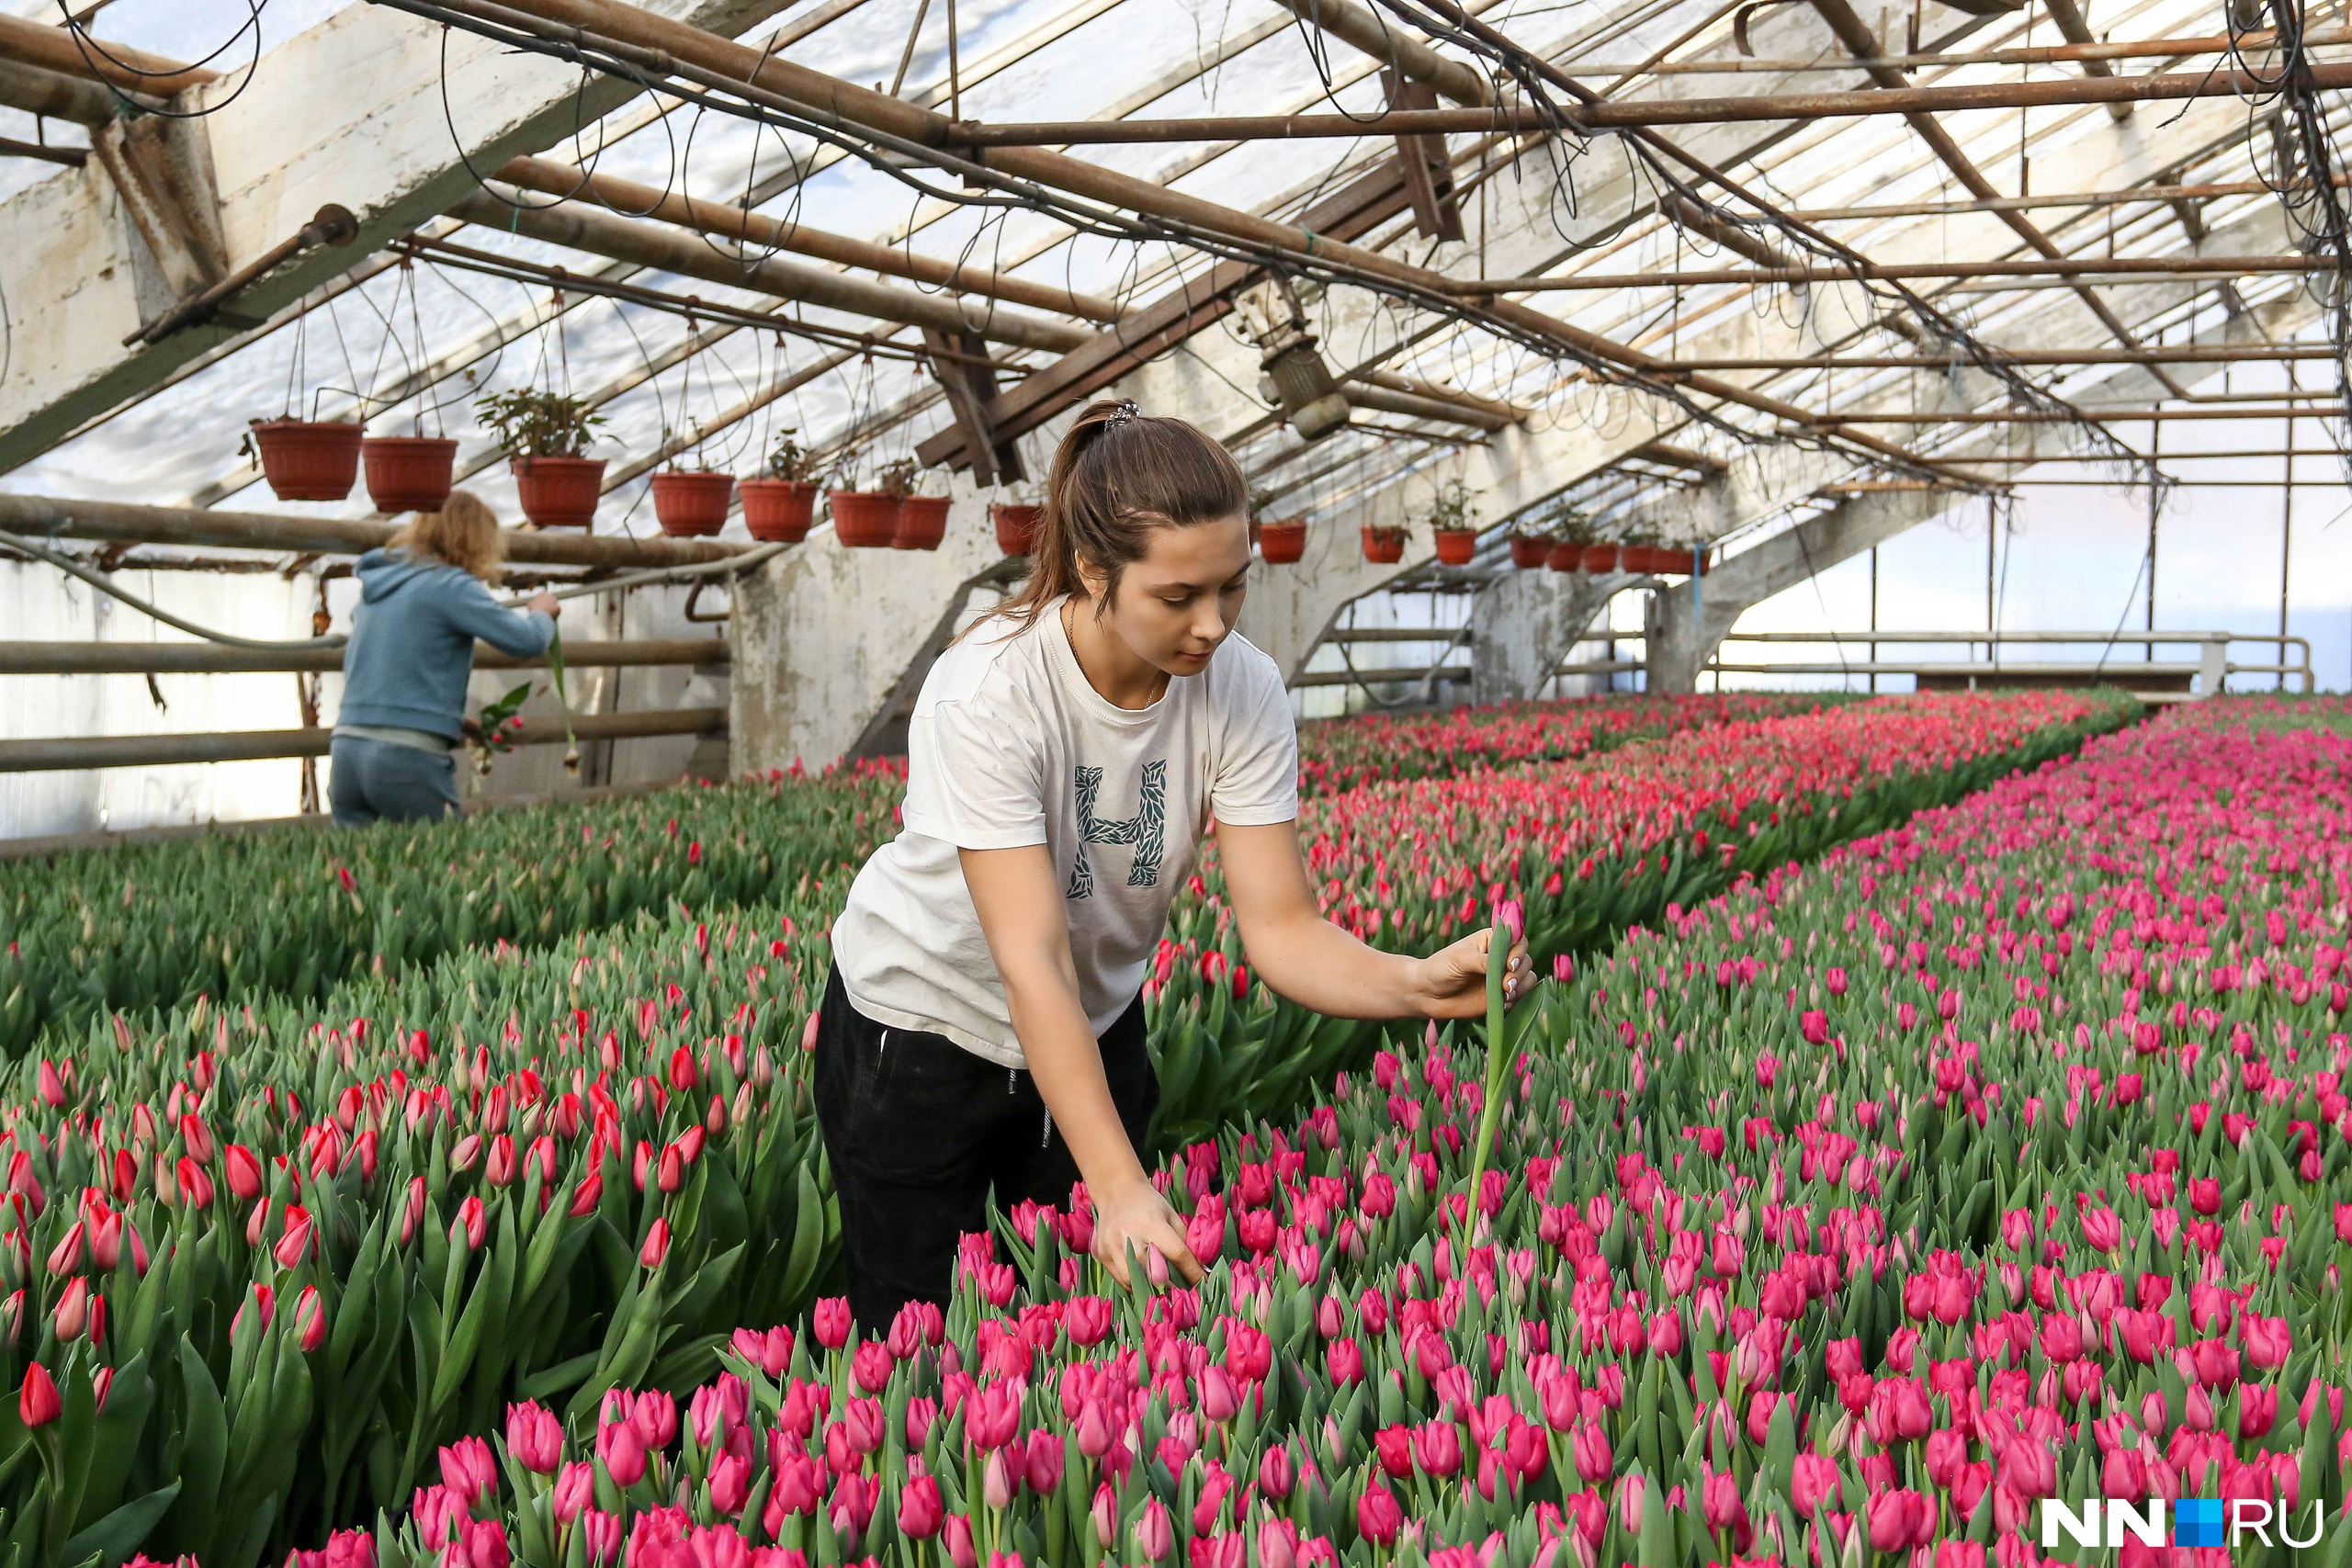 Наследница цветочного бизнеса. Как 22-летняя нижегородка зарабатывает десятки миллионов на тюльпанах